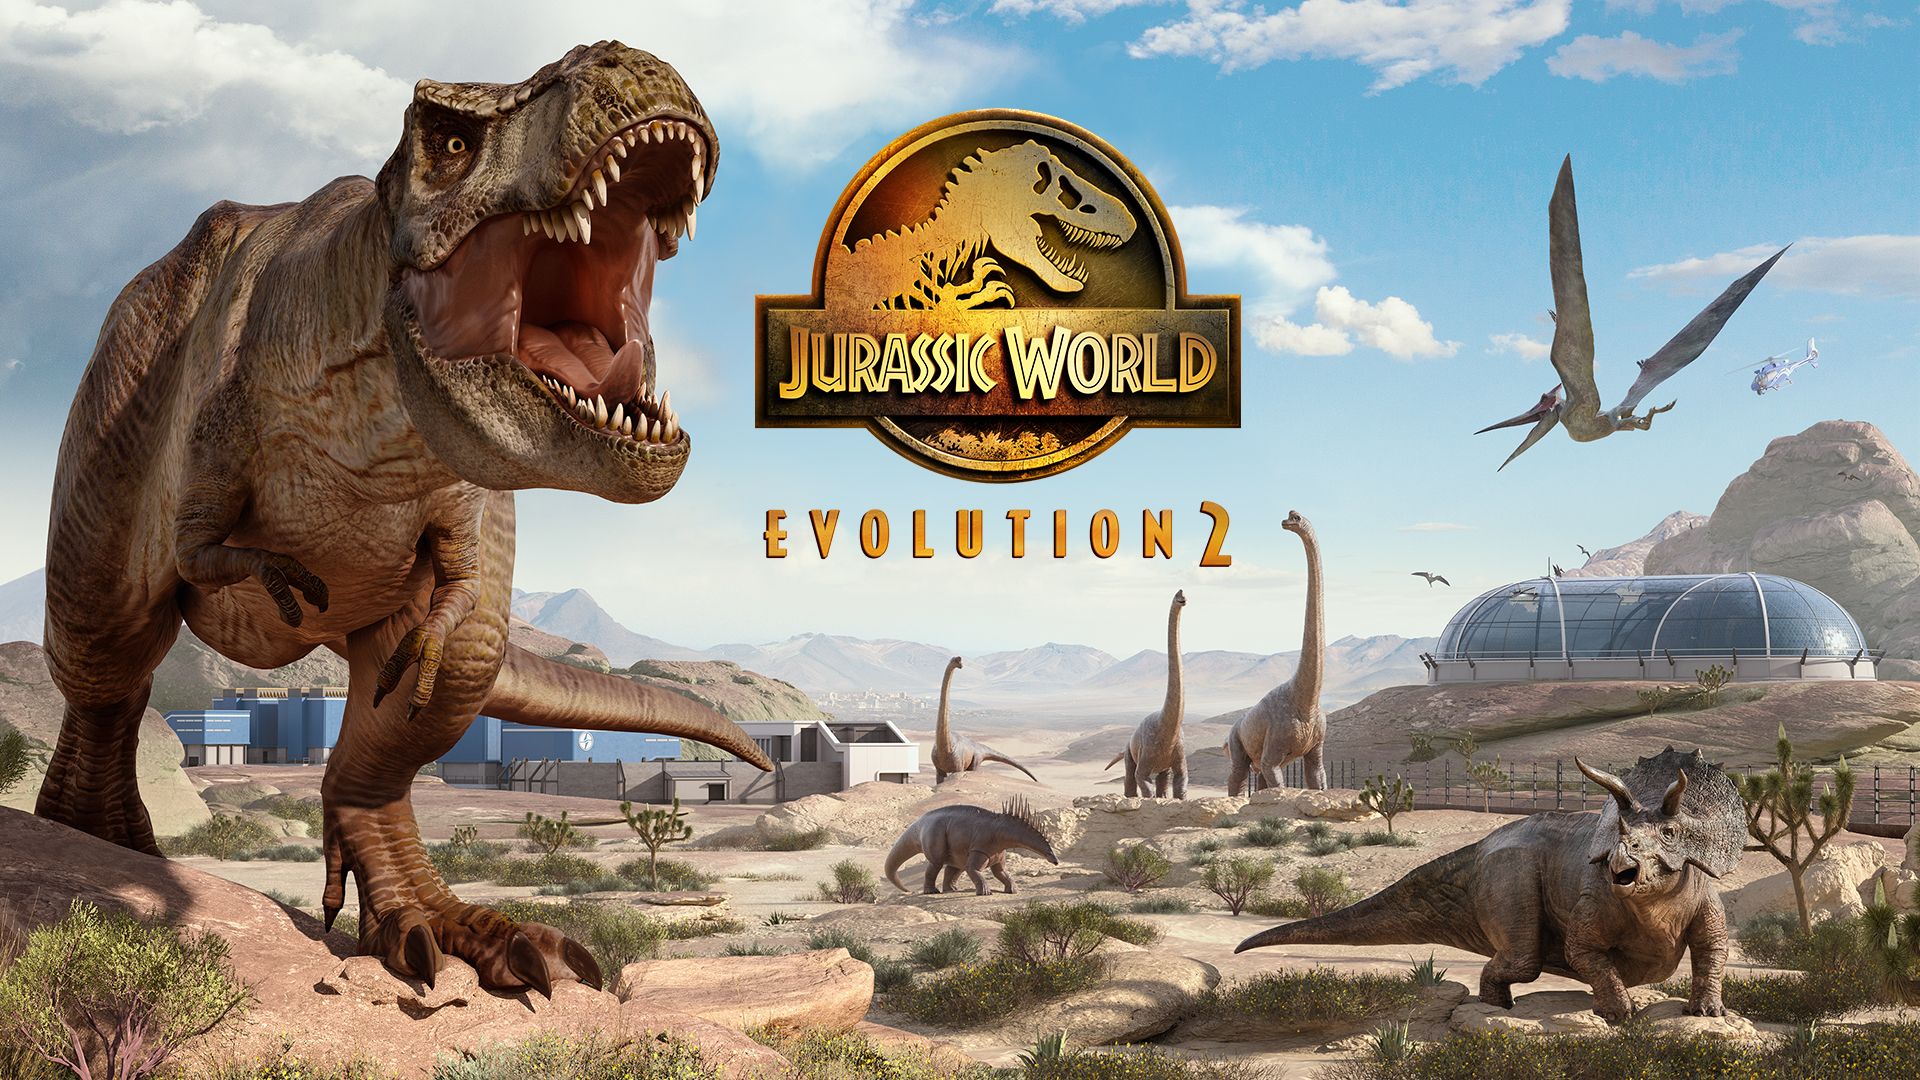 Jurassic World Evolution 2 krenuo slabije od očekivanog